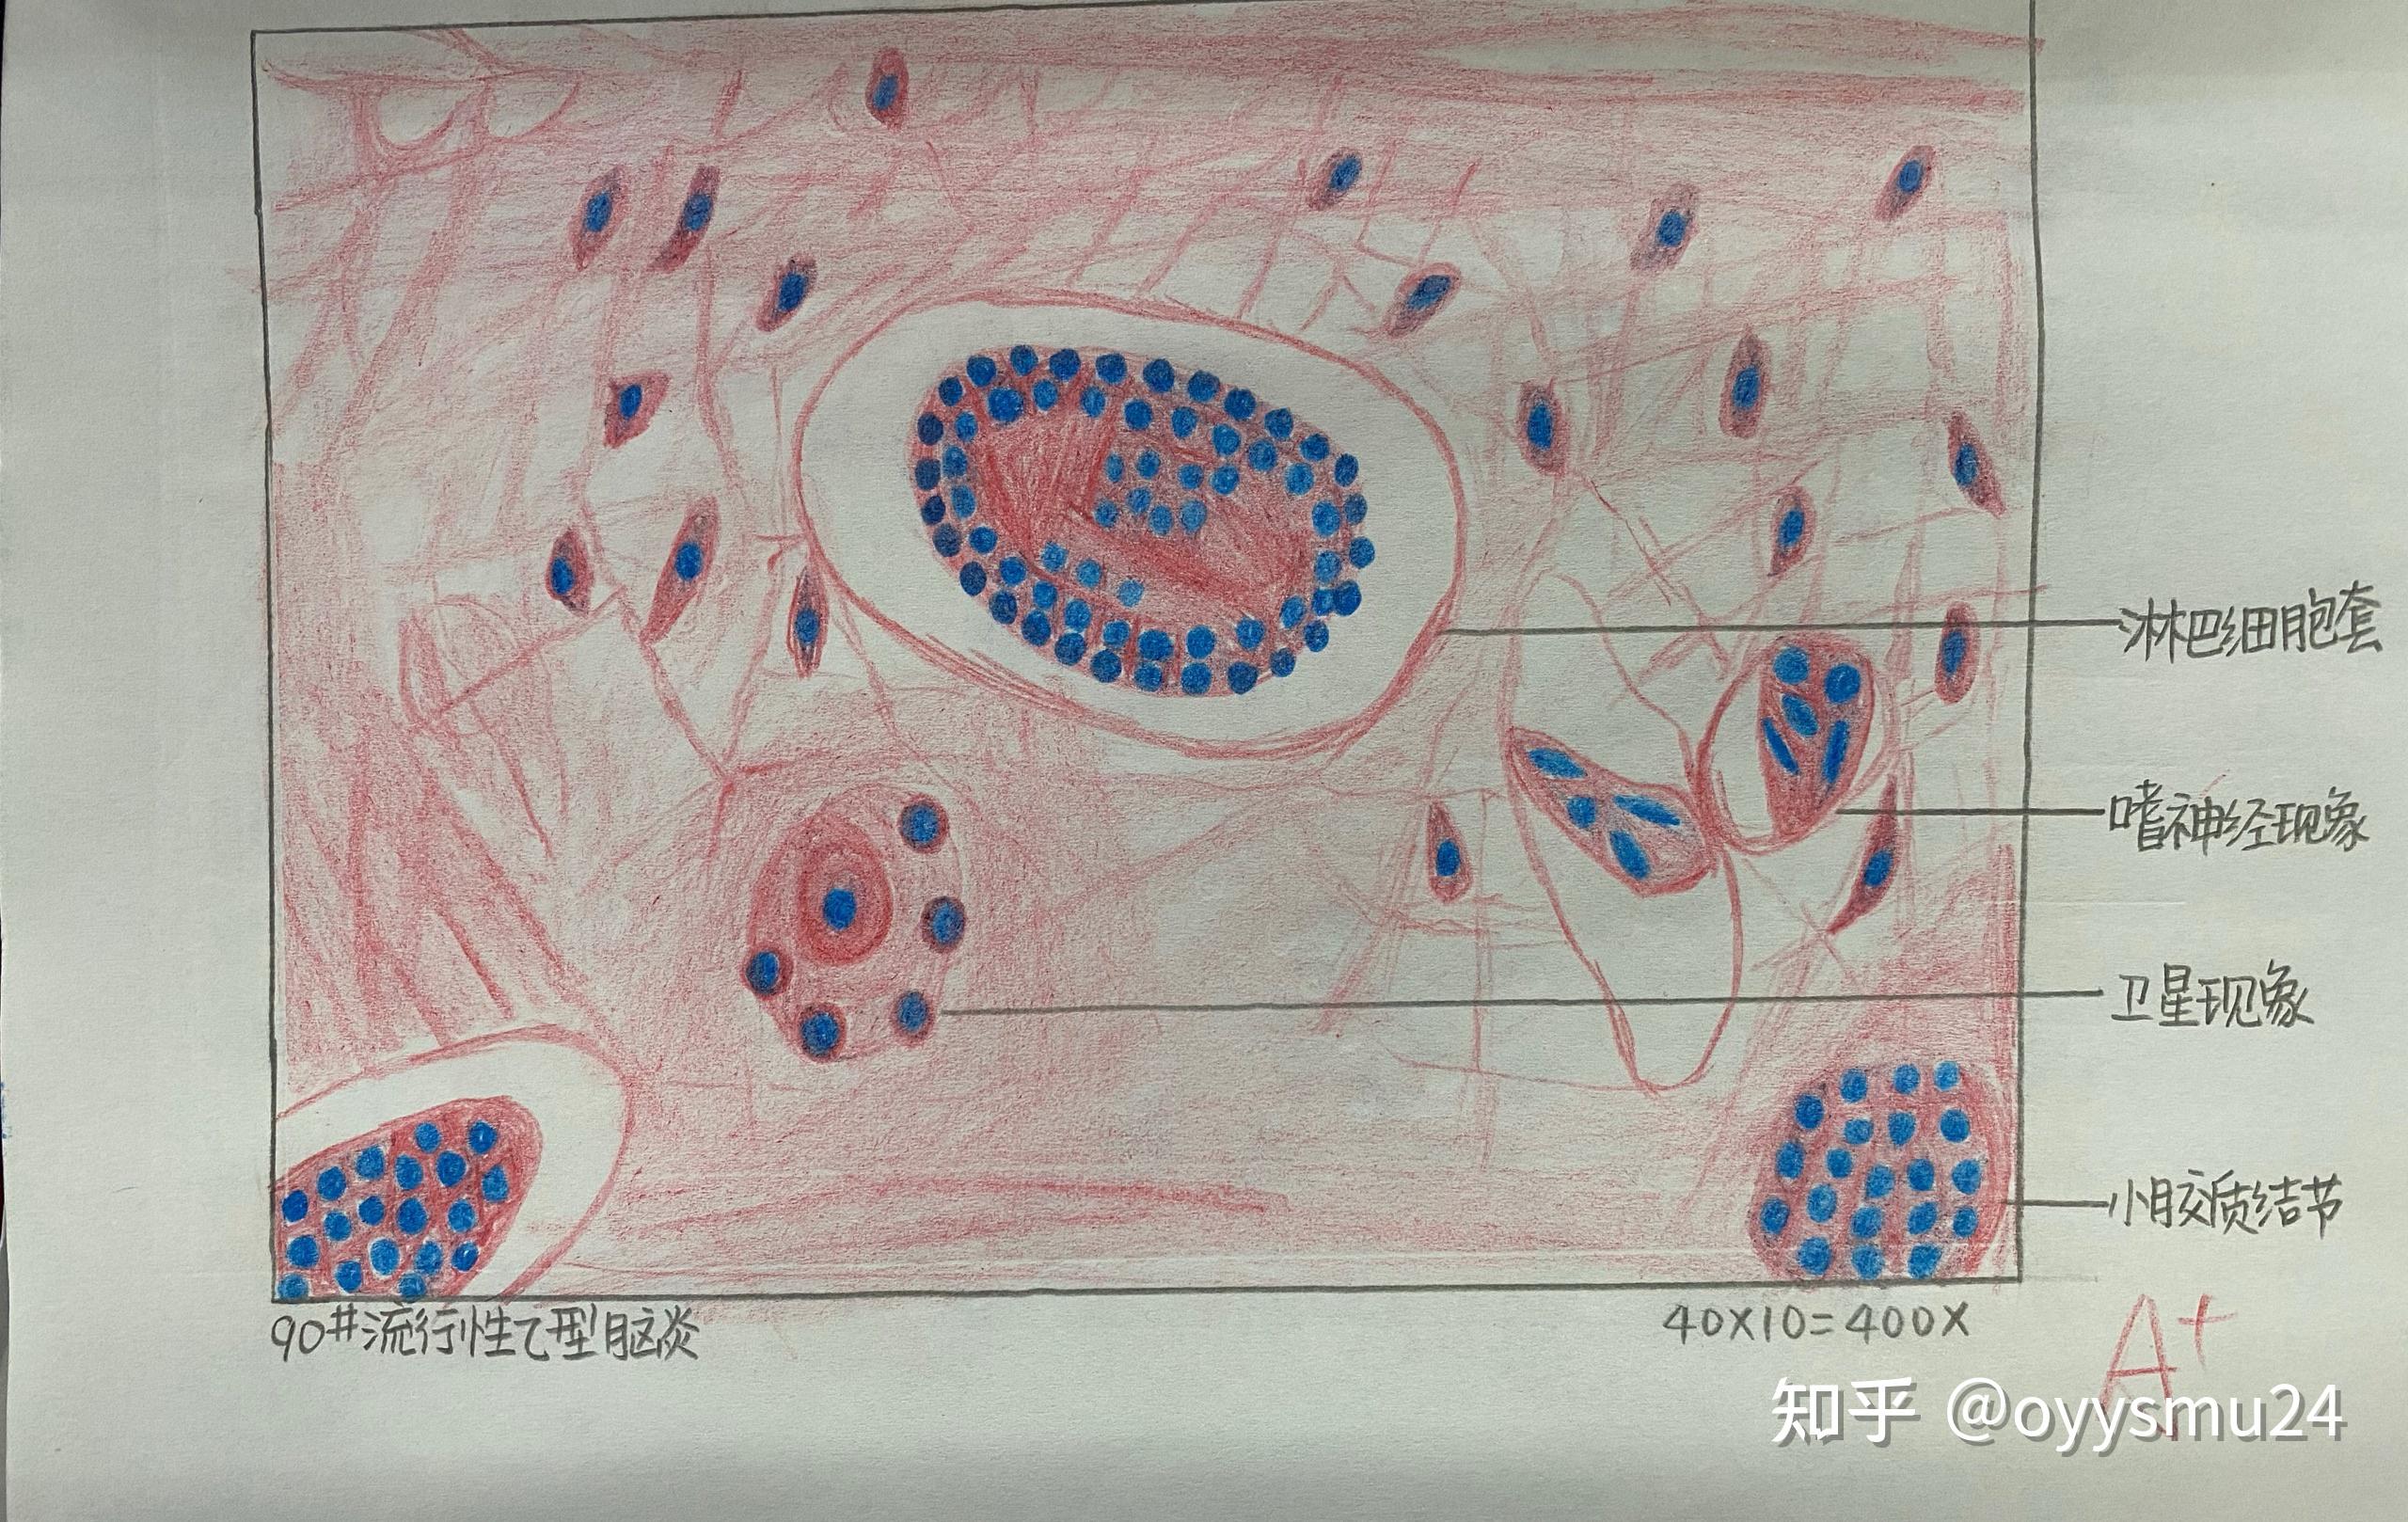 肺炎链球菌 红蓝铅笔图片